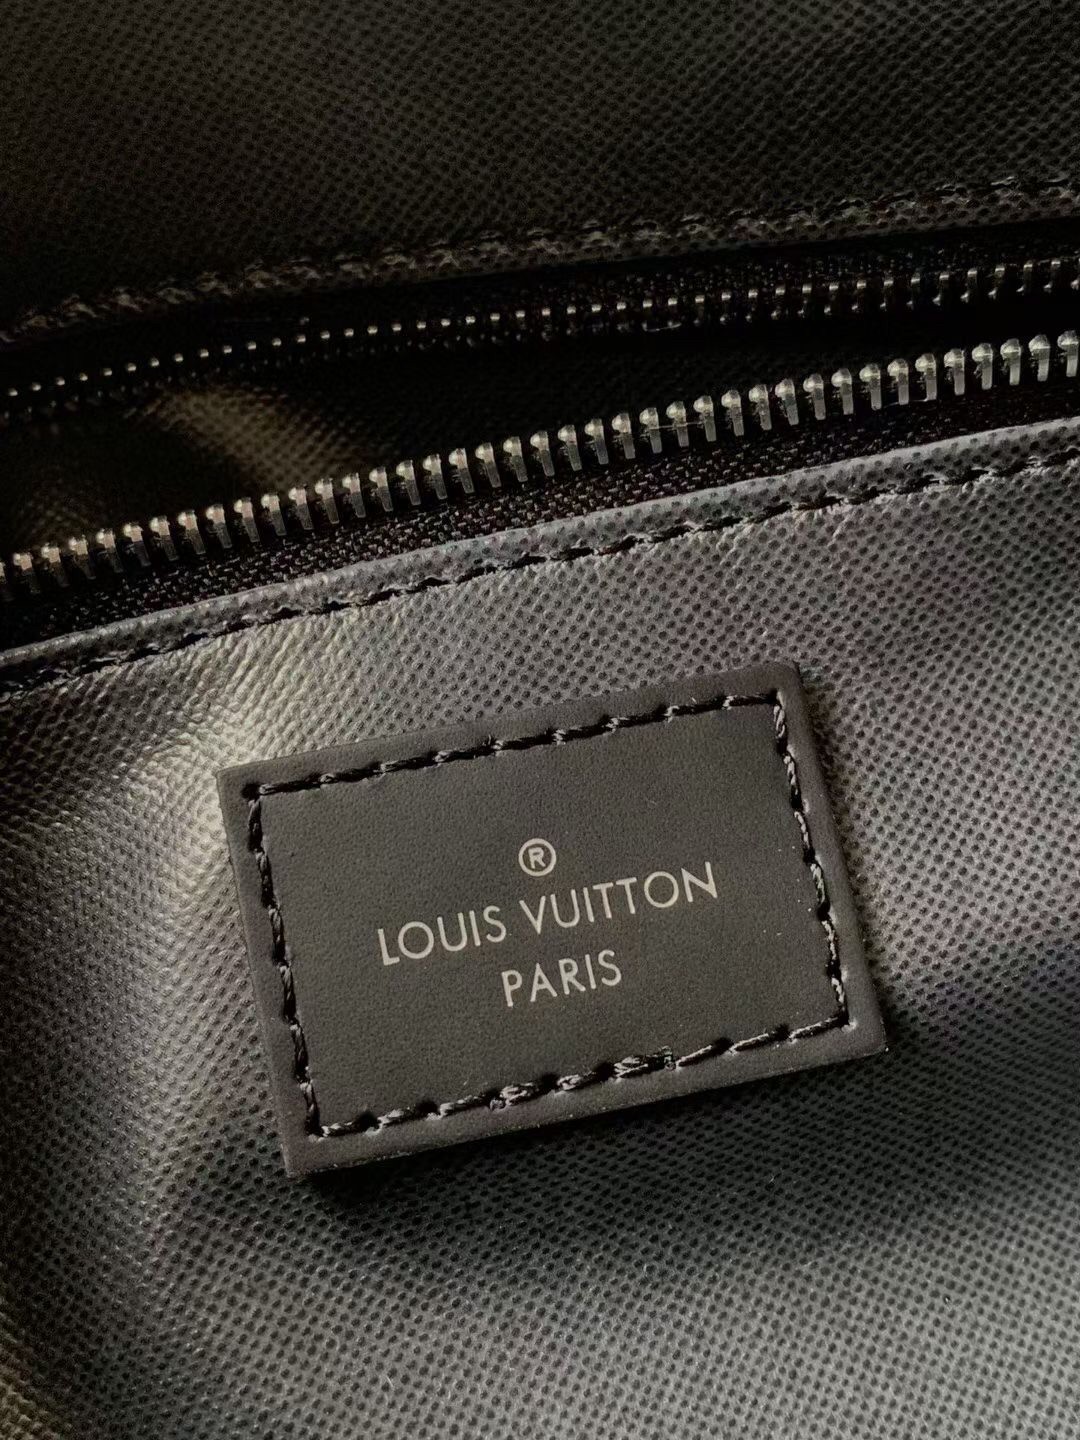 Shop Louis Vuitton Dopp kit toilet pouch (M44494, N40127) by